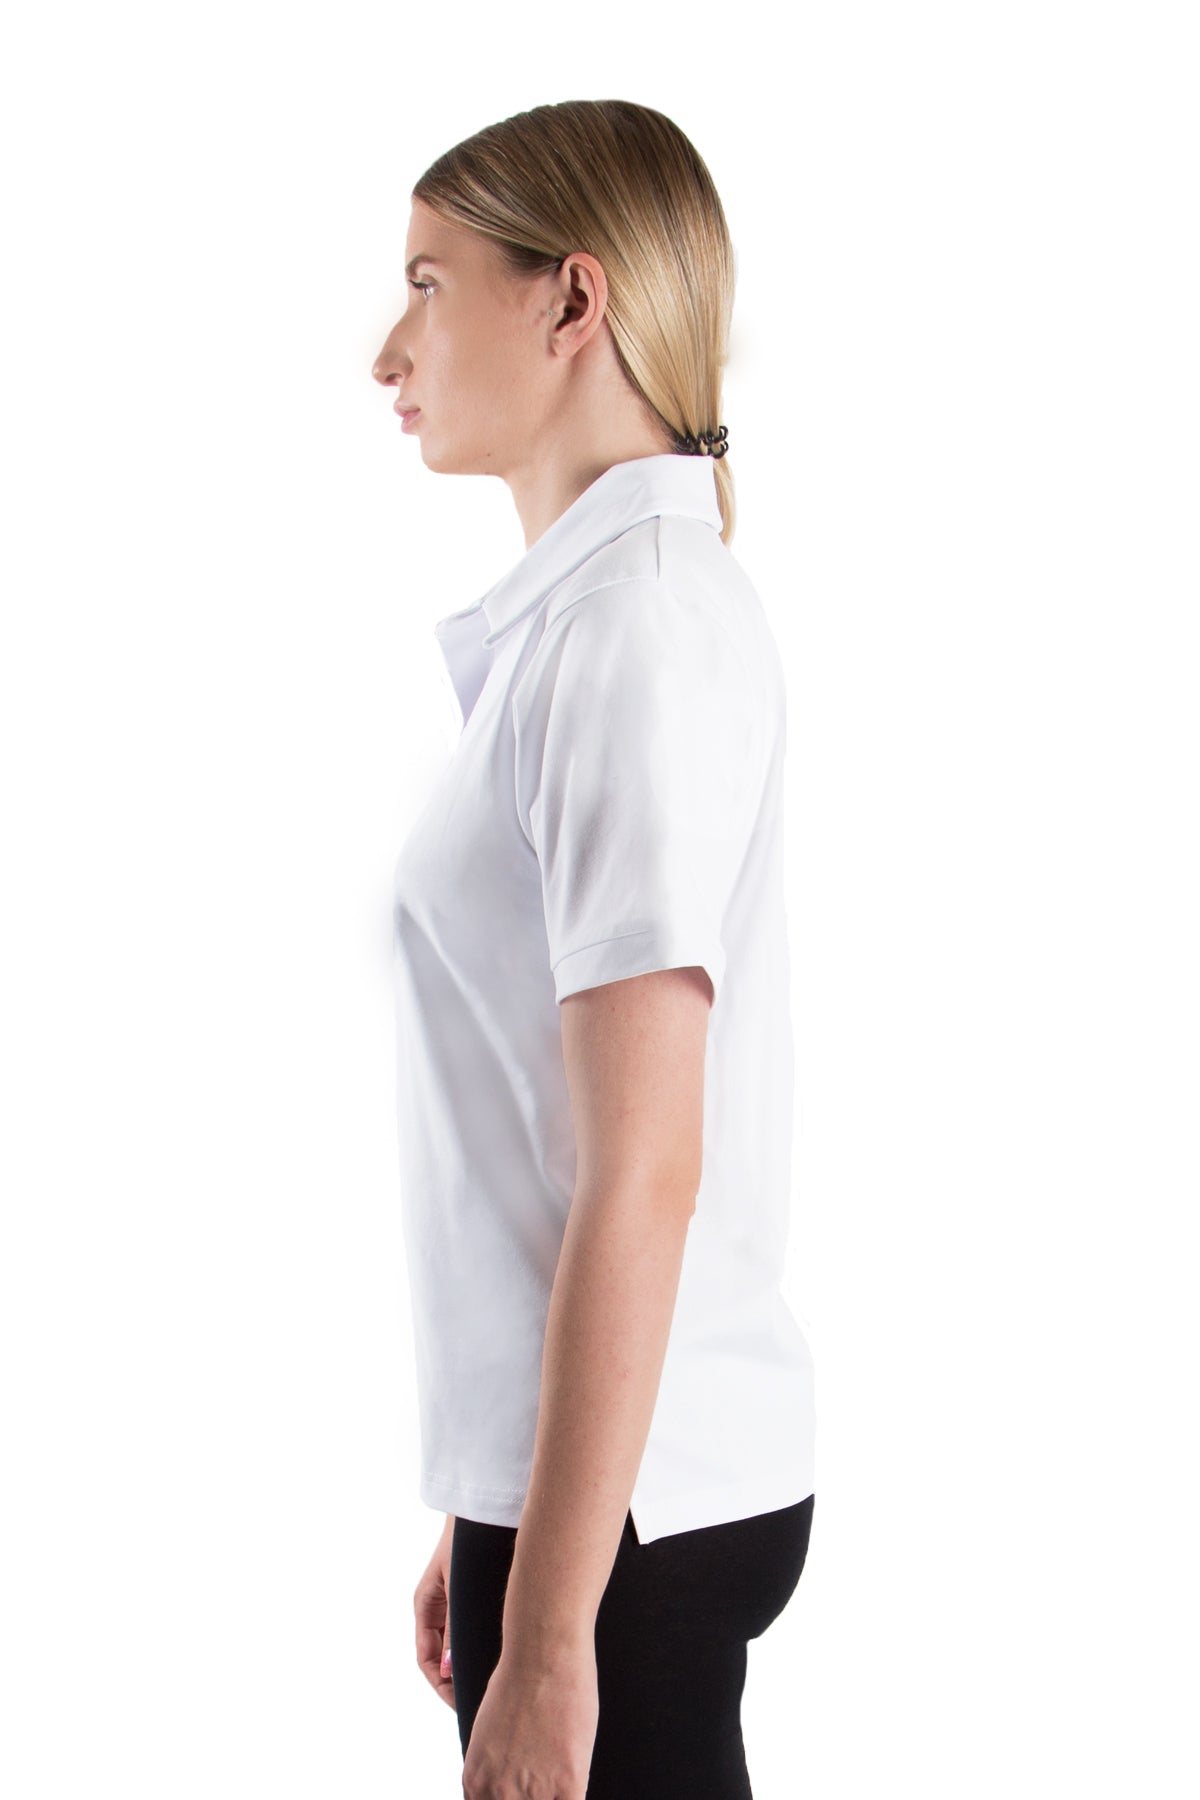 Poloshirt (10er-Pack) - white